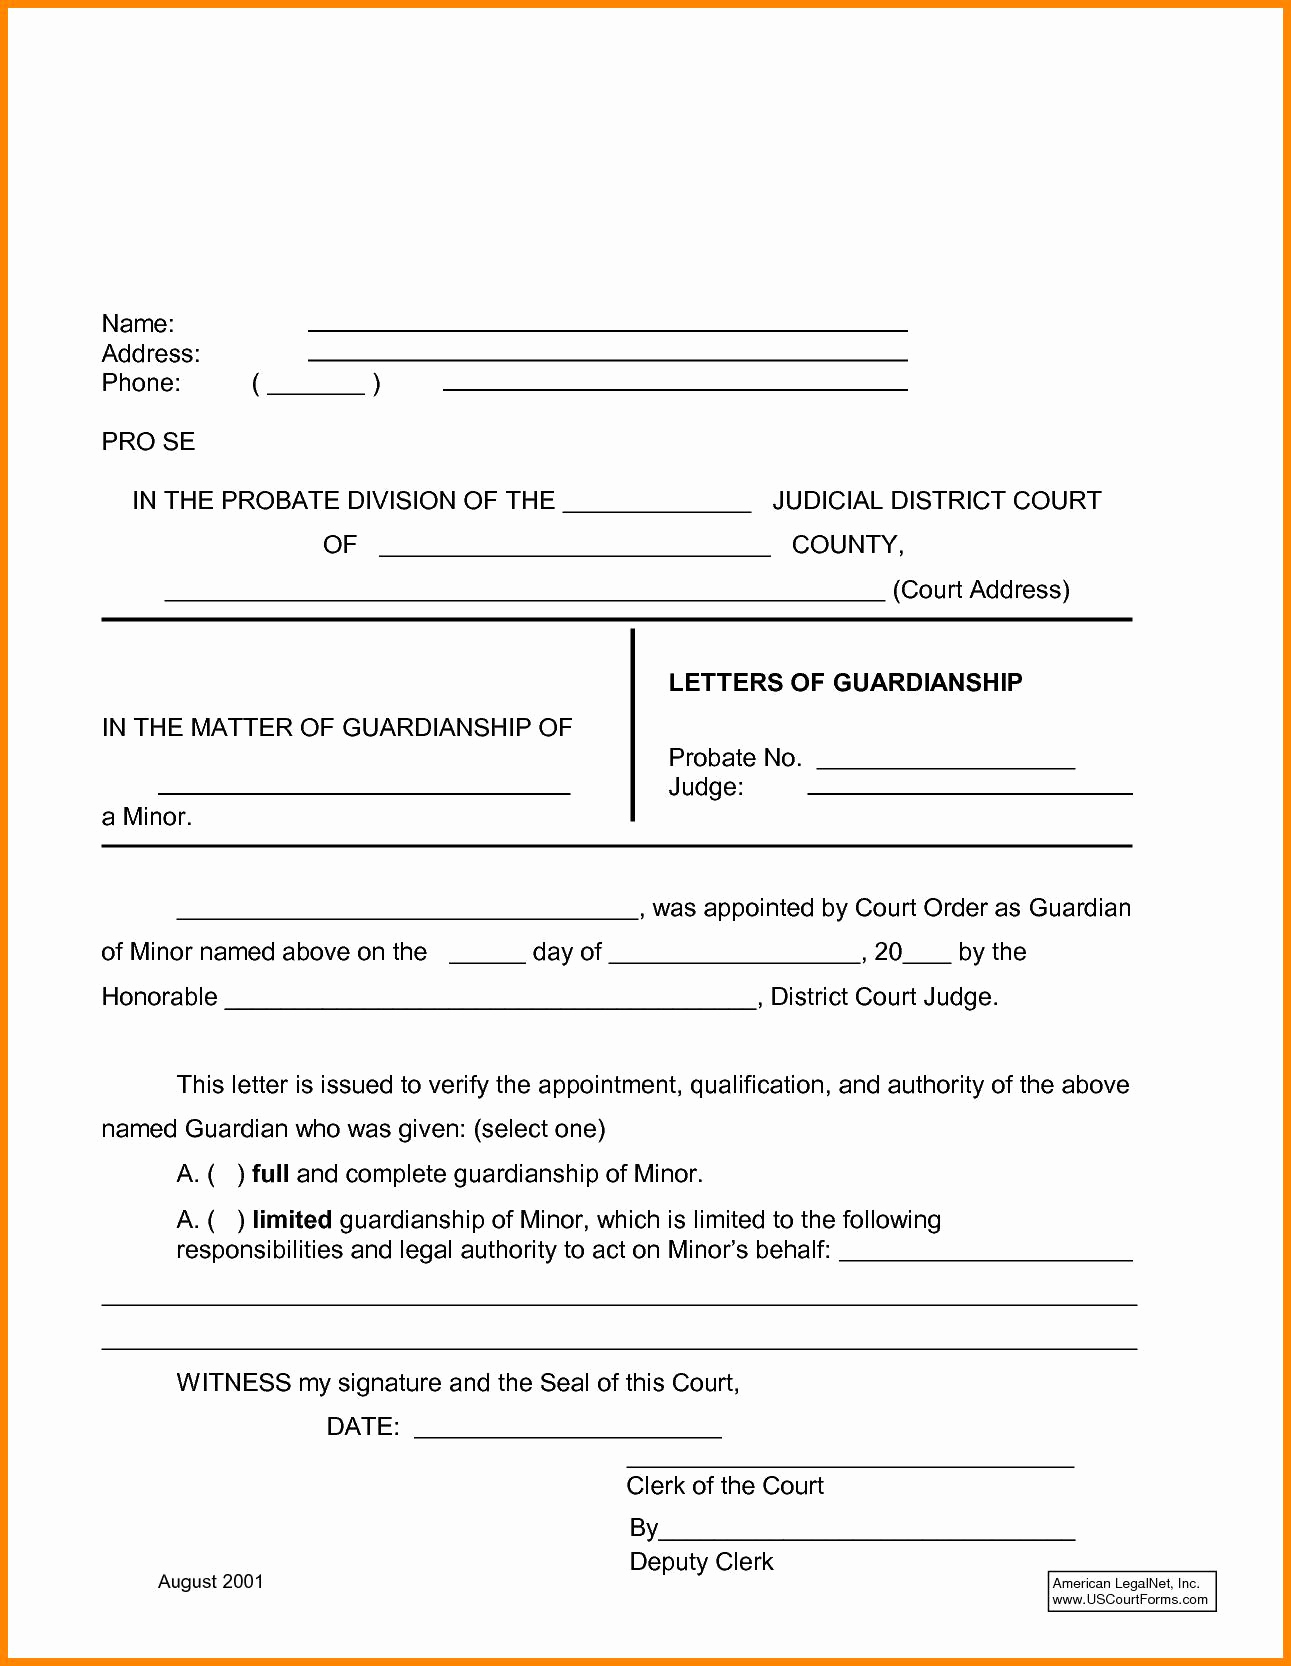 Permanent Guardianship Letter Template - Temporary Guardianship Agreement form Temporary Custody Letter